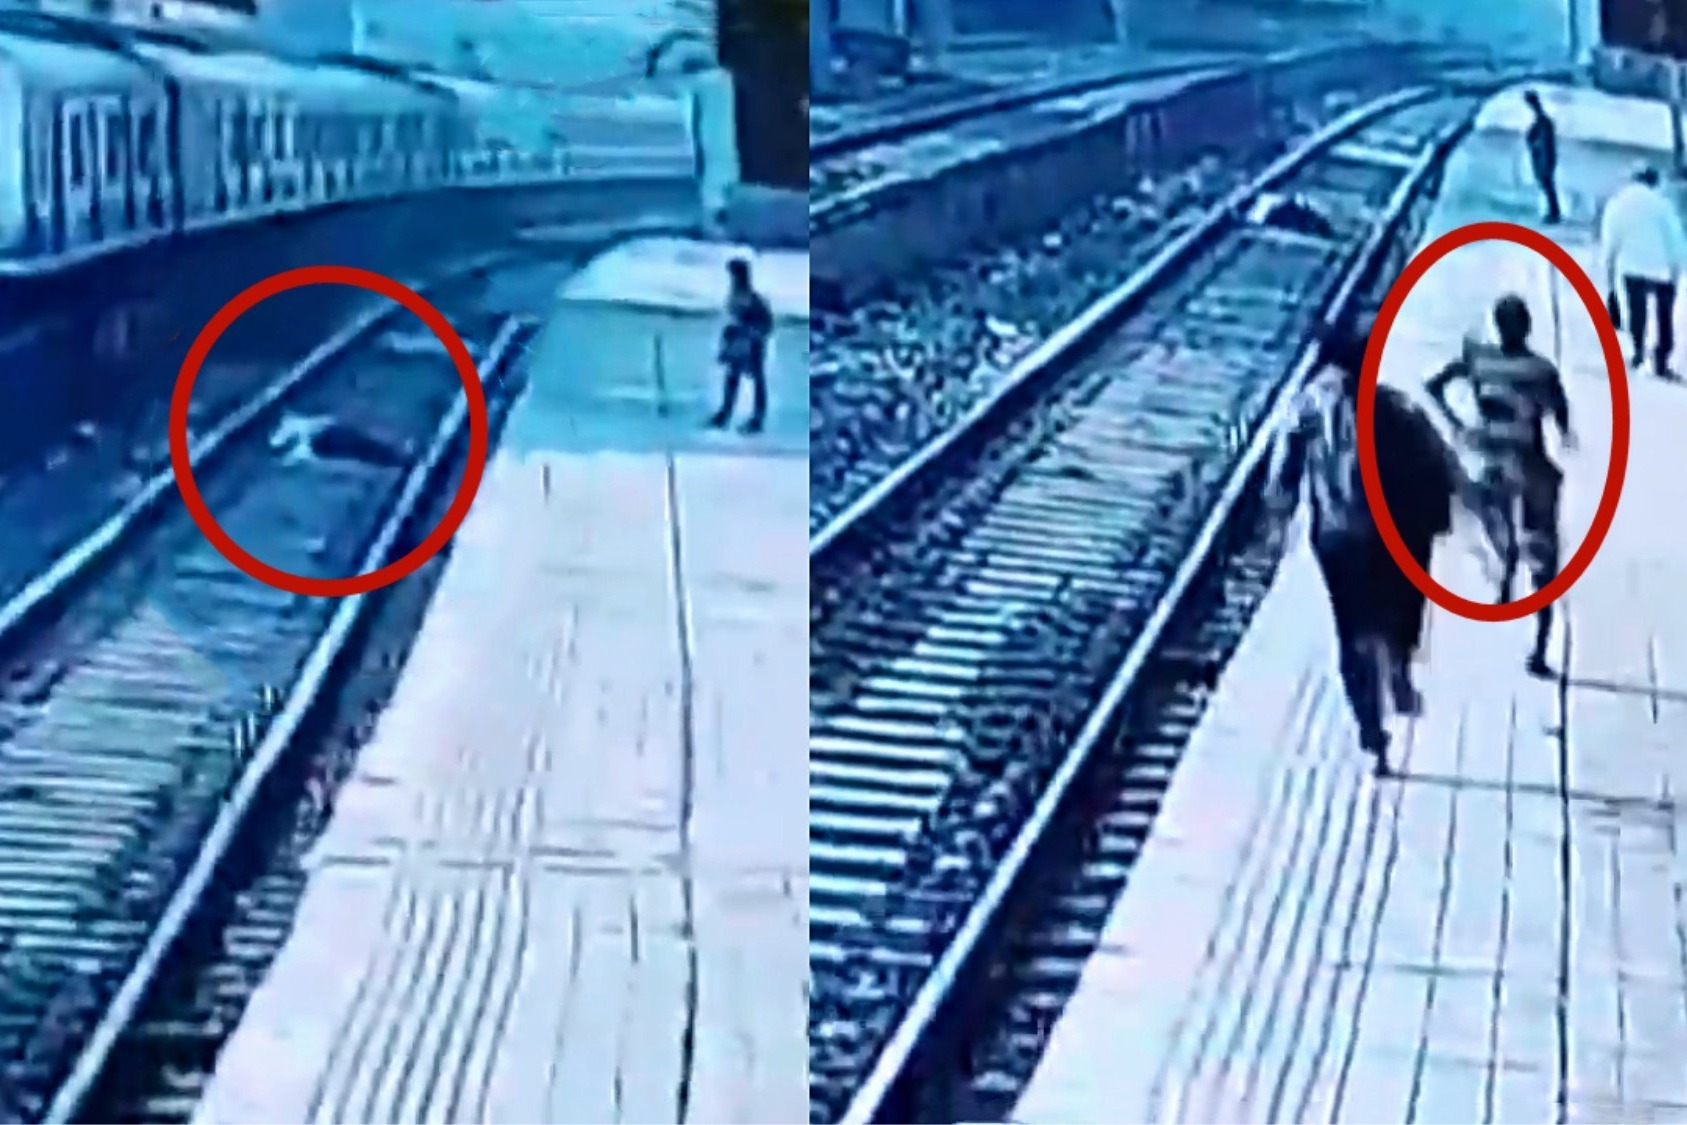 差一点就碾上！监拍：乘客晕倒坠入铁轨 女警花拦下火车救人